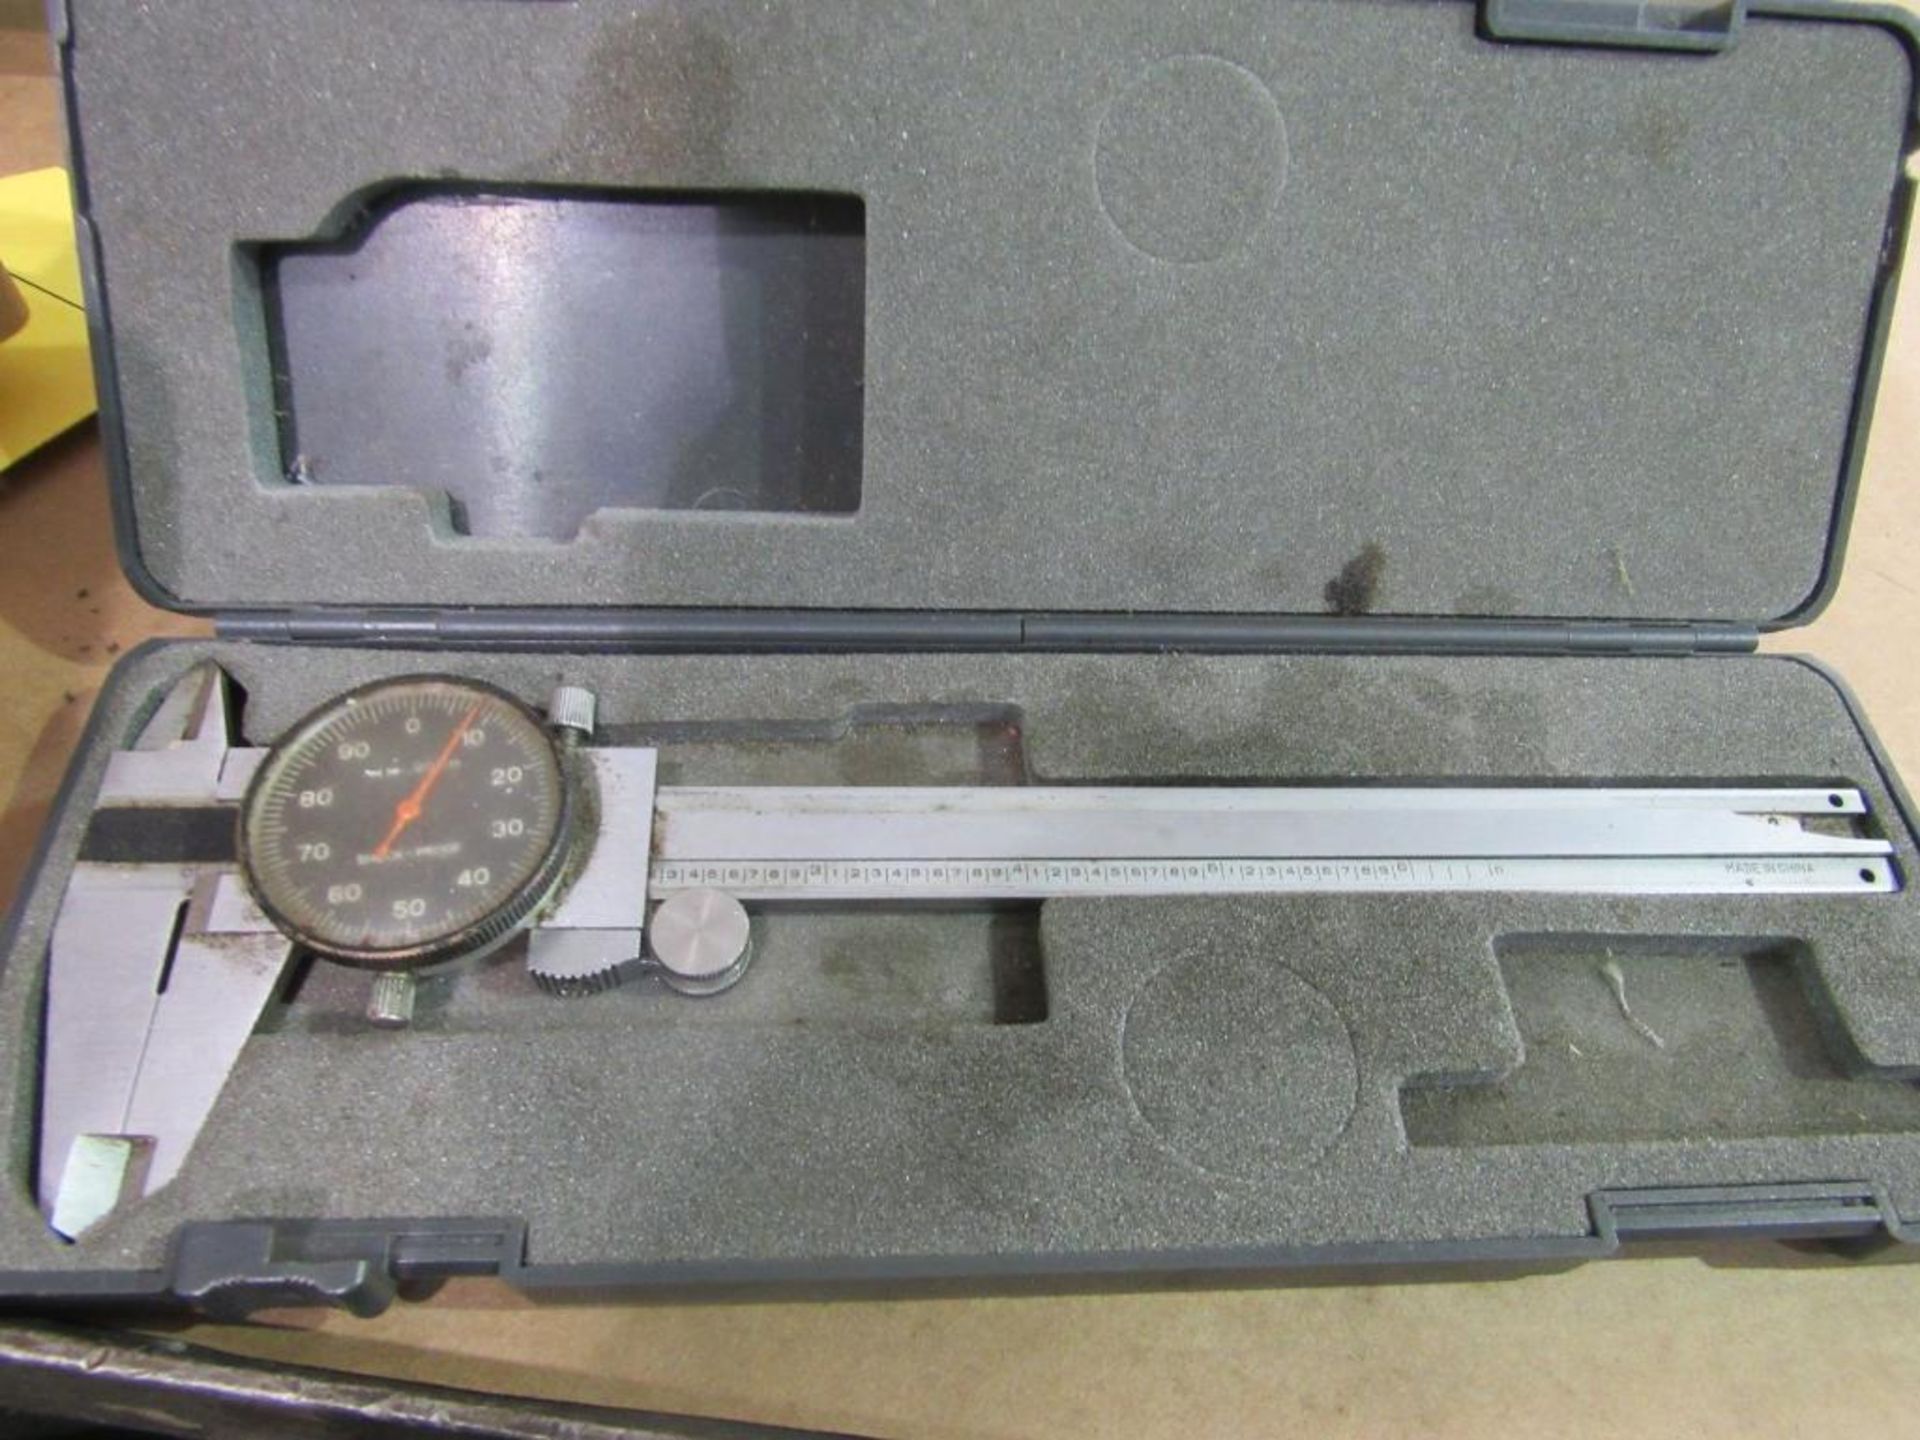 Lot of 2: (1) Mitutoyo Micrometer, 0" - 1", (1) Vernier Caliper, 6" - Image 3 of 4